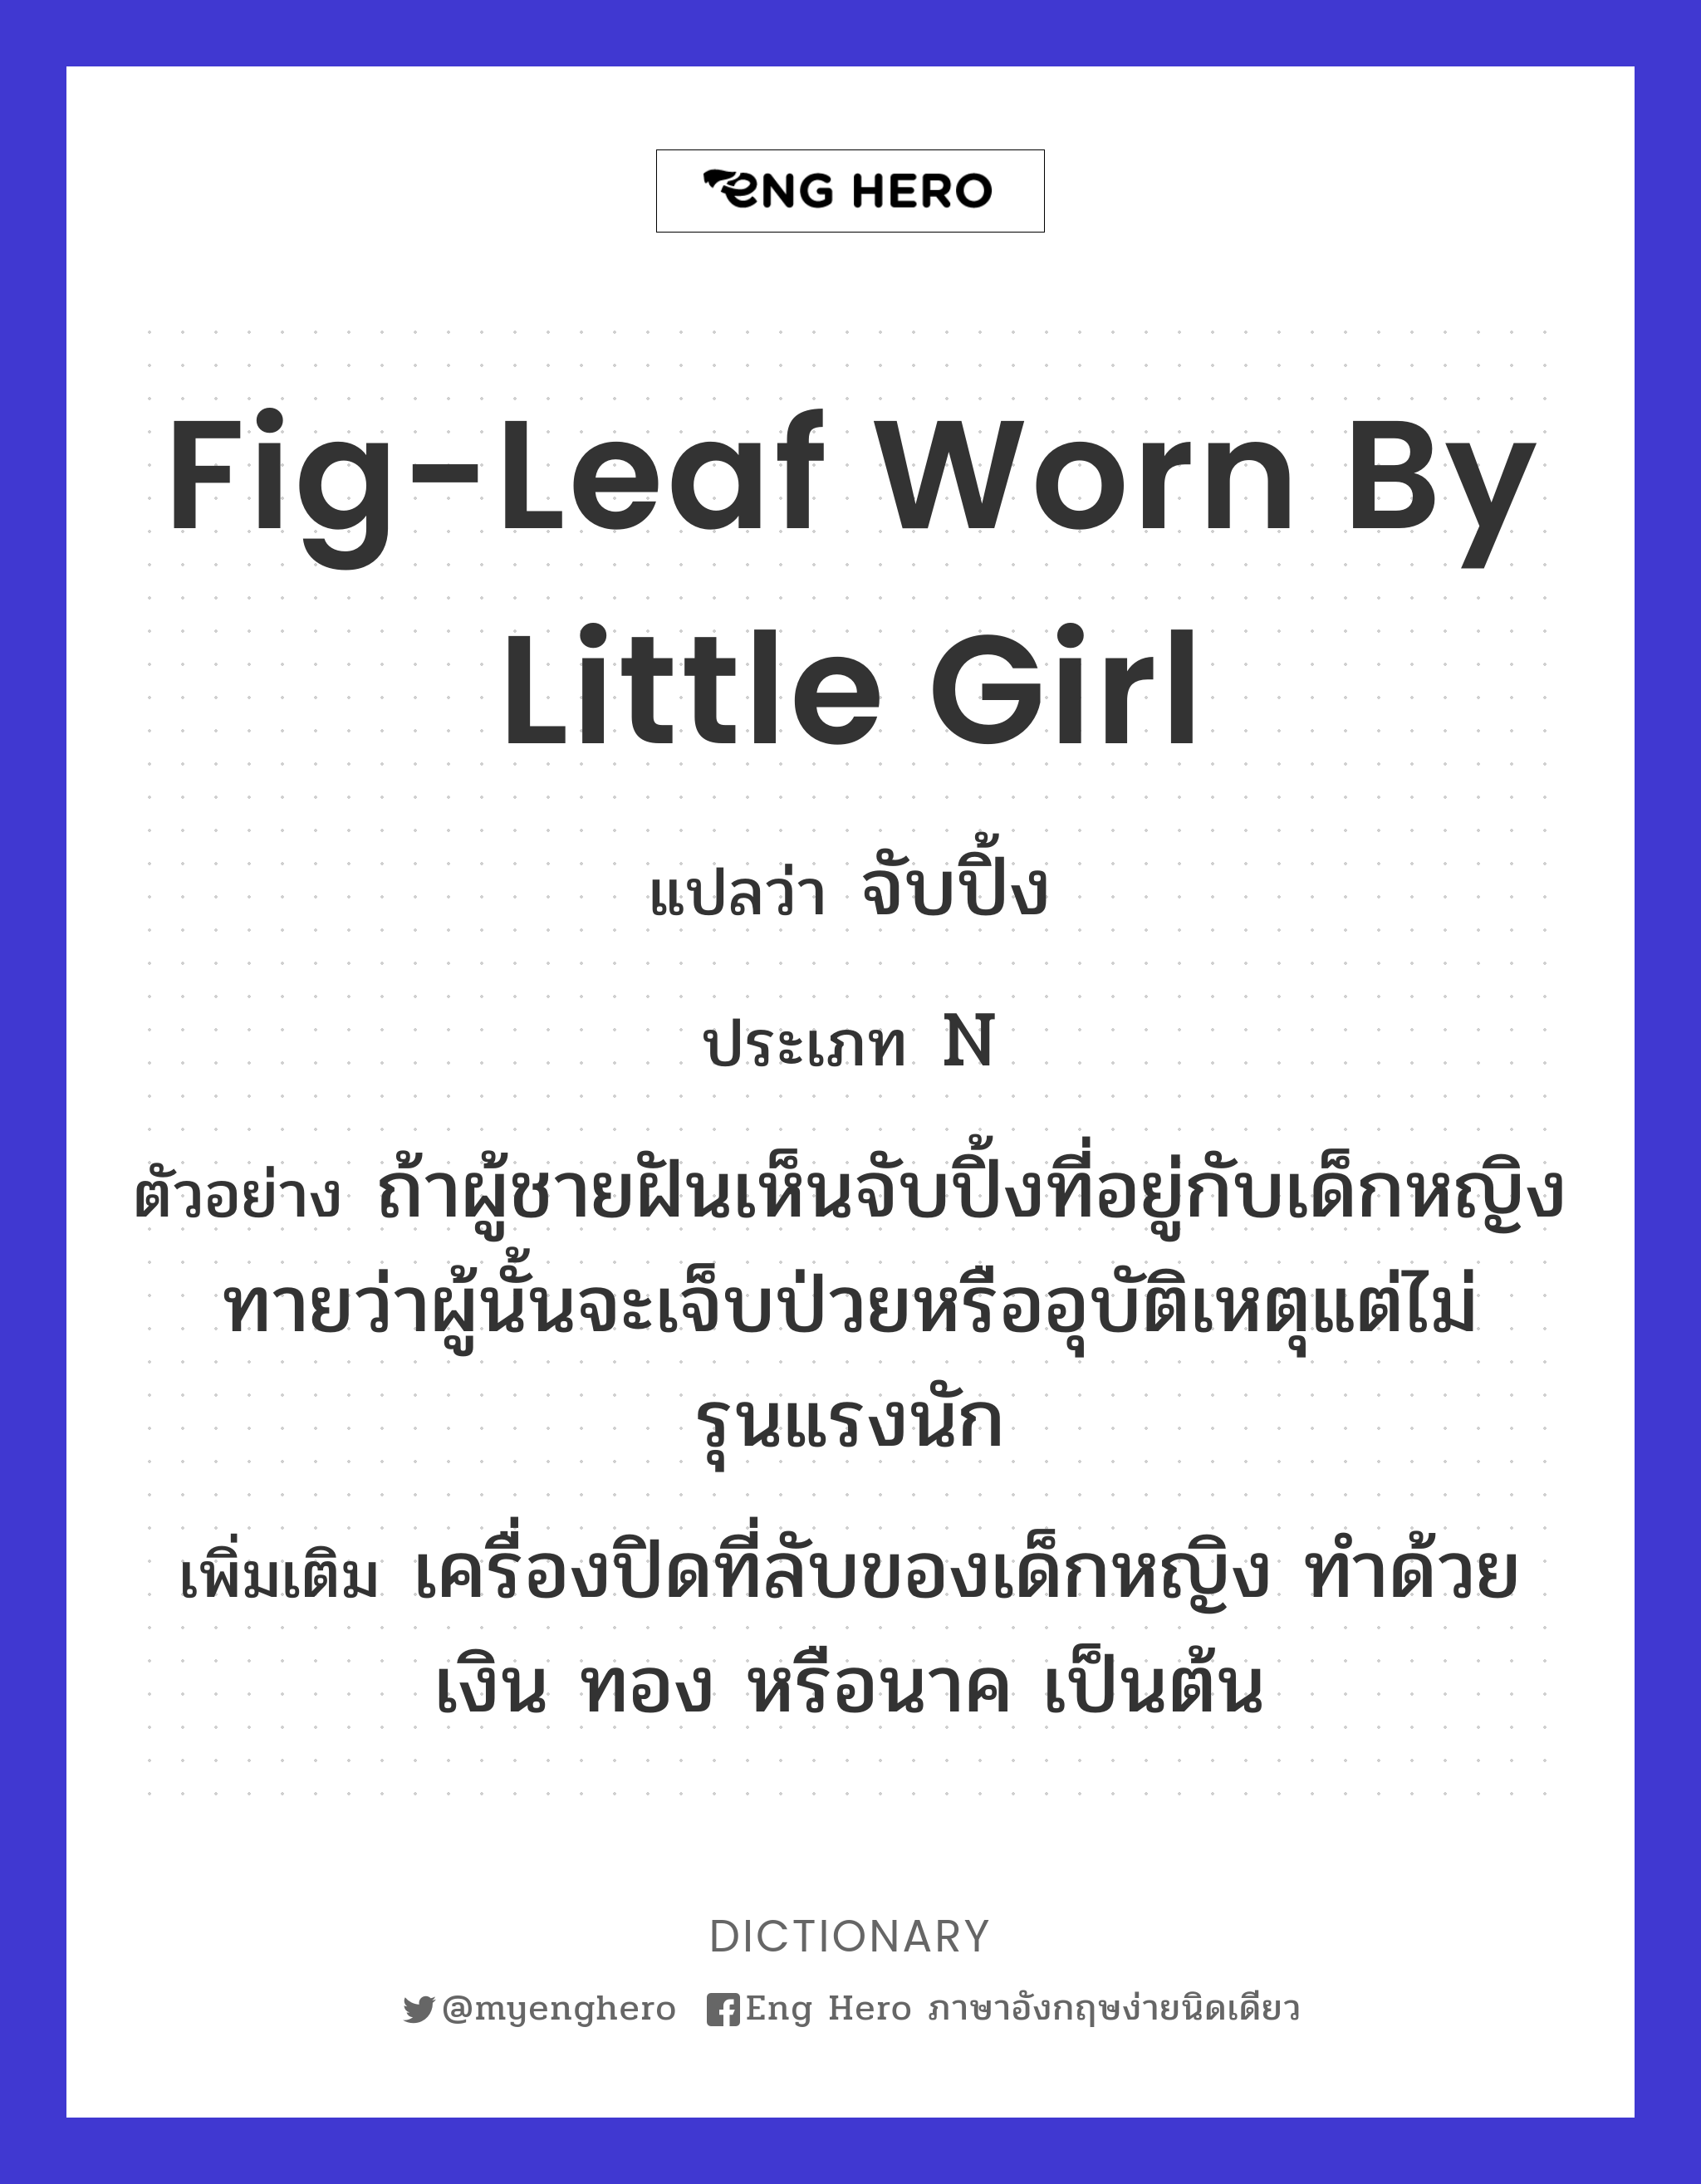 fig-leaf worn by little girl